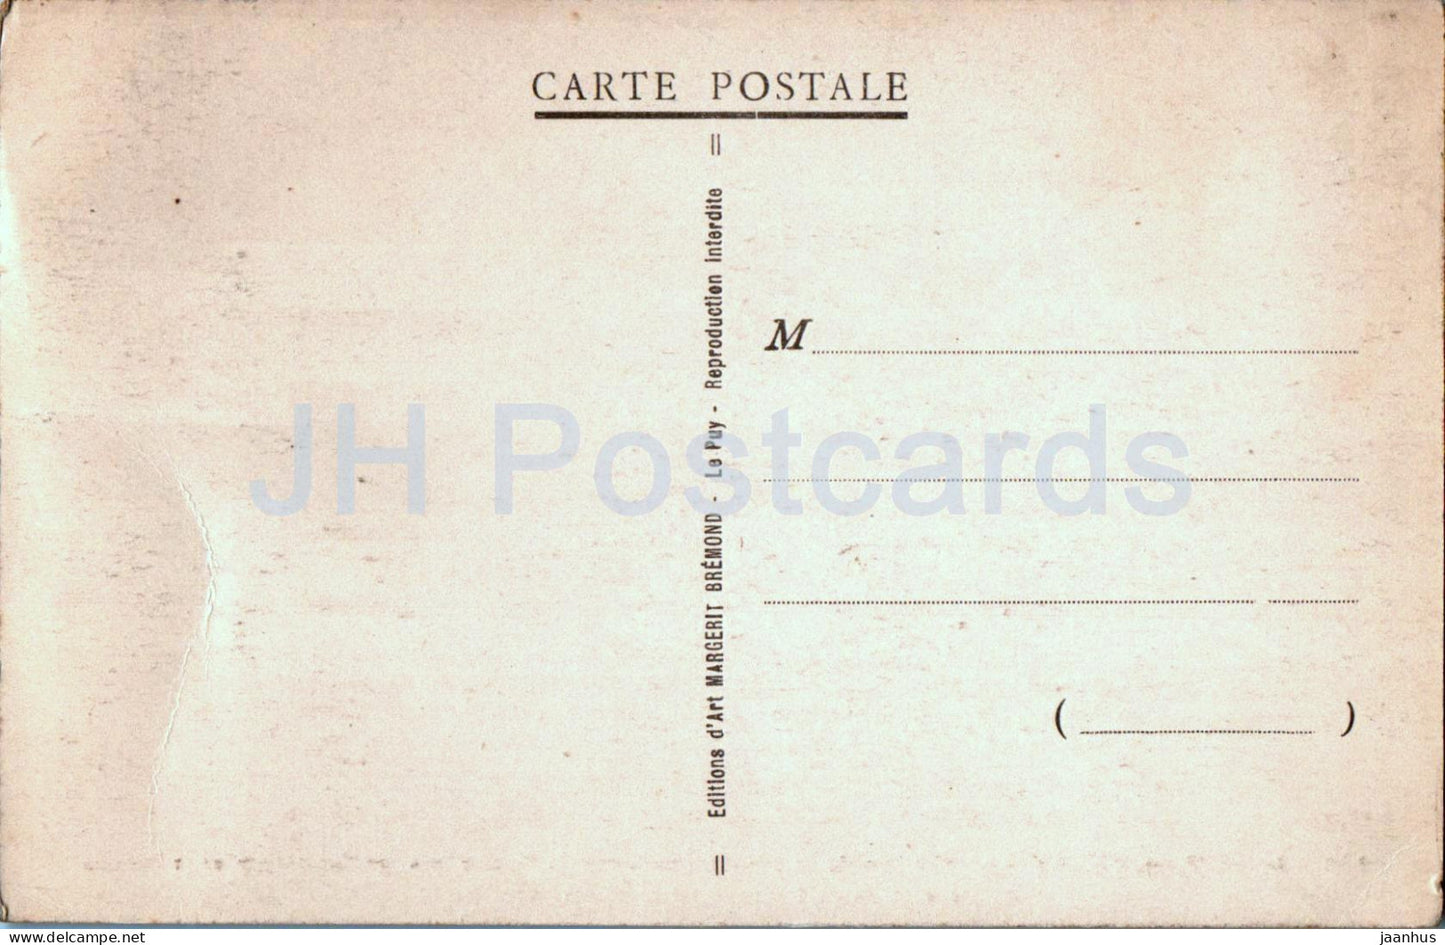 Le Puy en Velay - Le Viaduc de la Chartreuse sur la Borne - viaduc - chemin de fer - 1128 - carte postale ancienne - France - inutilisé 